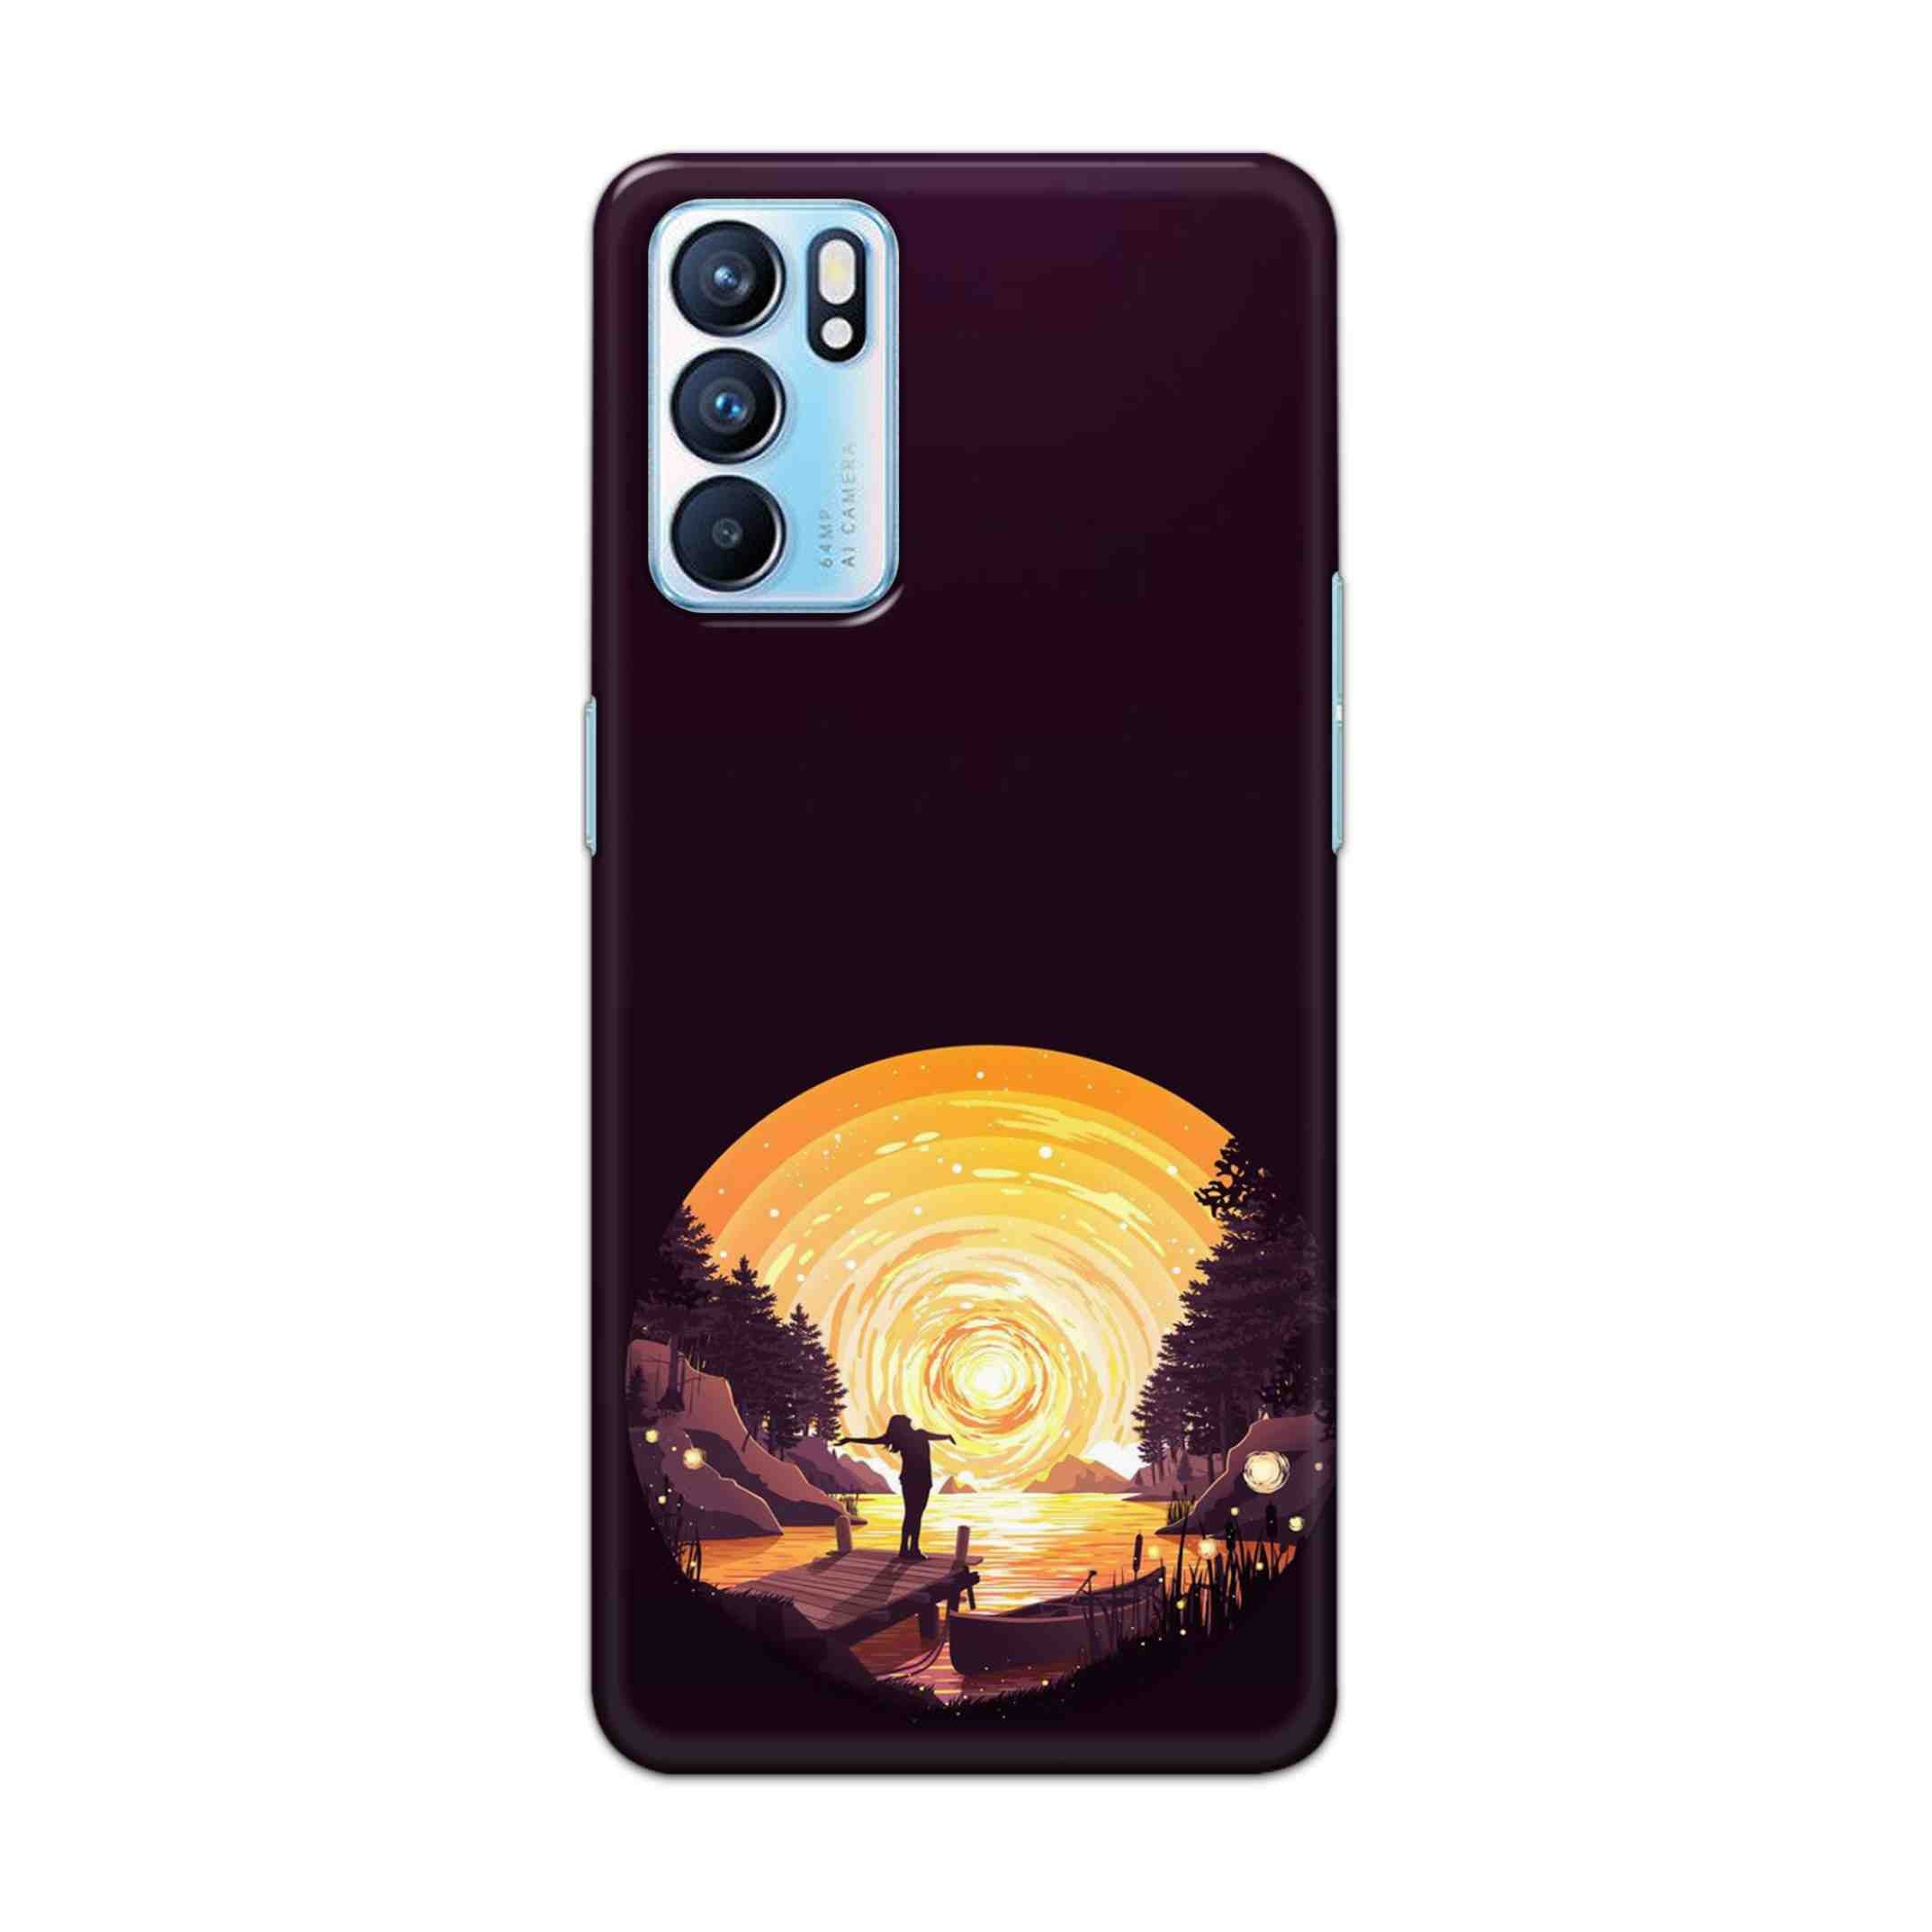 Buy Night Sunrise Hard Back Mobile Phone Case Cover For OPPO RENO 6 Online